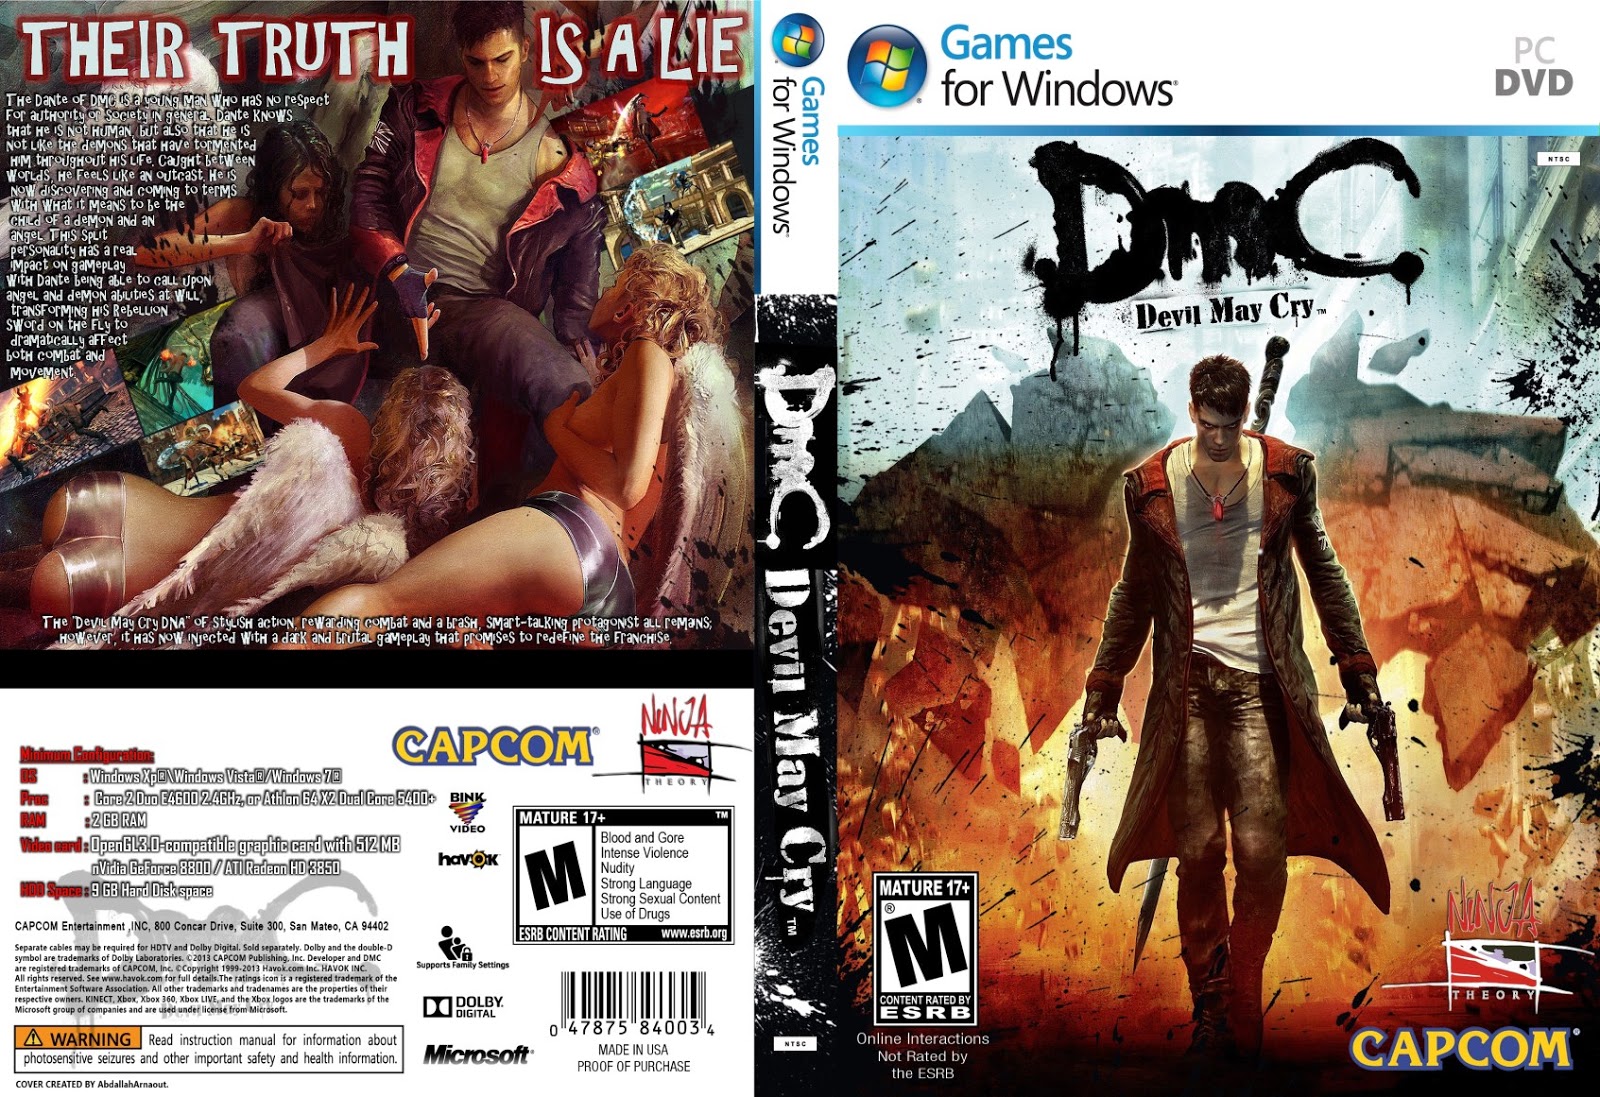 Requisitos mínimos da versão PC de Devil May Cry 5